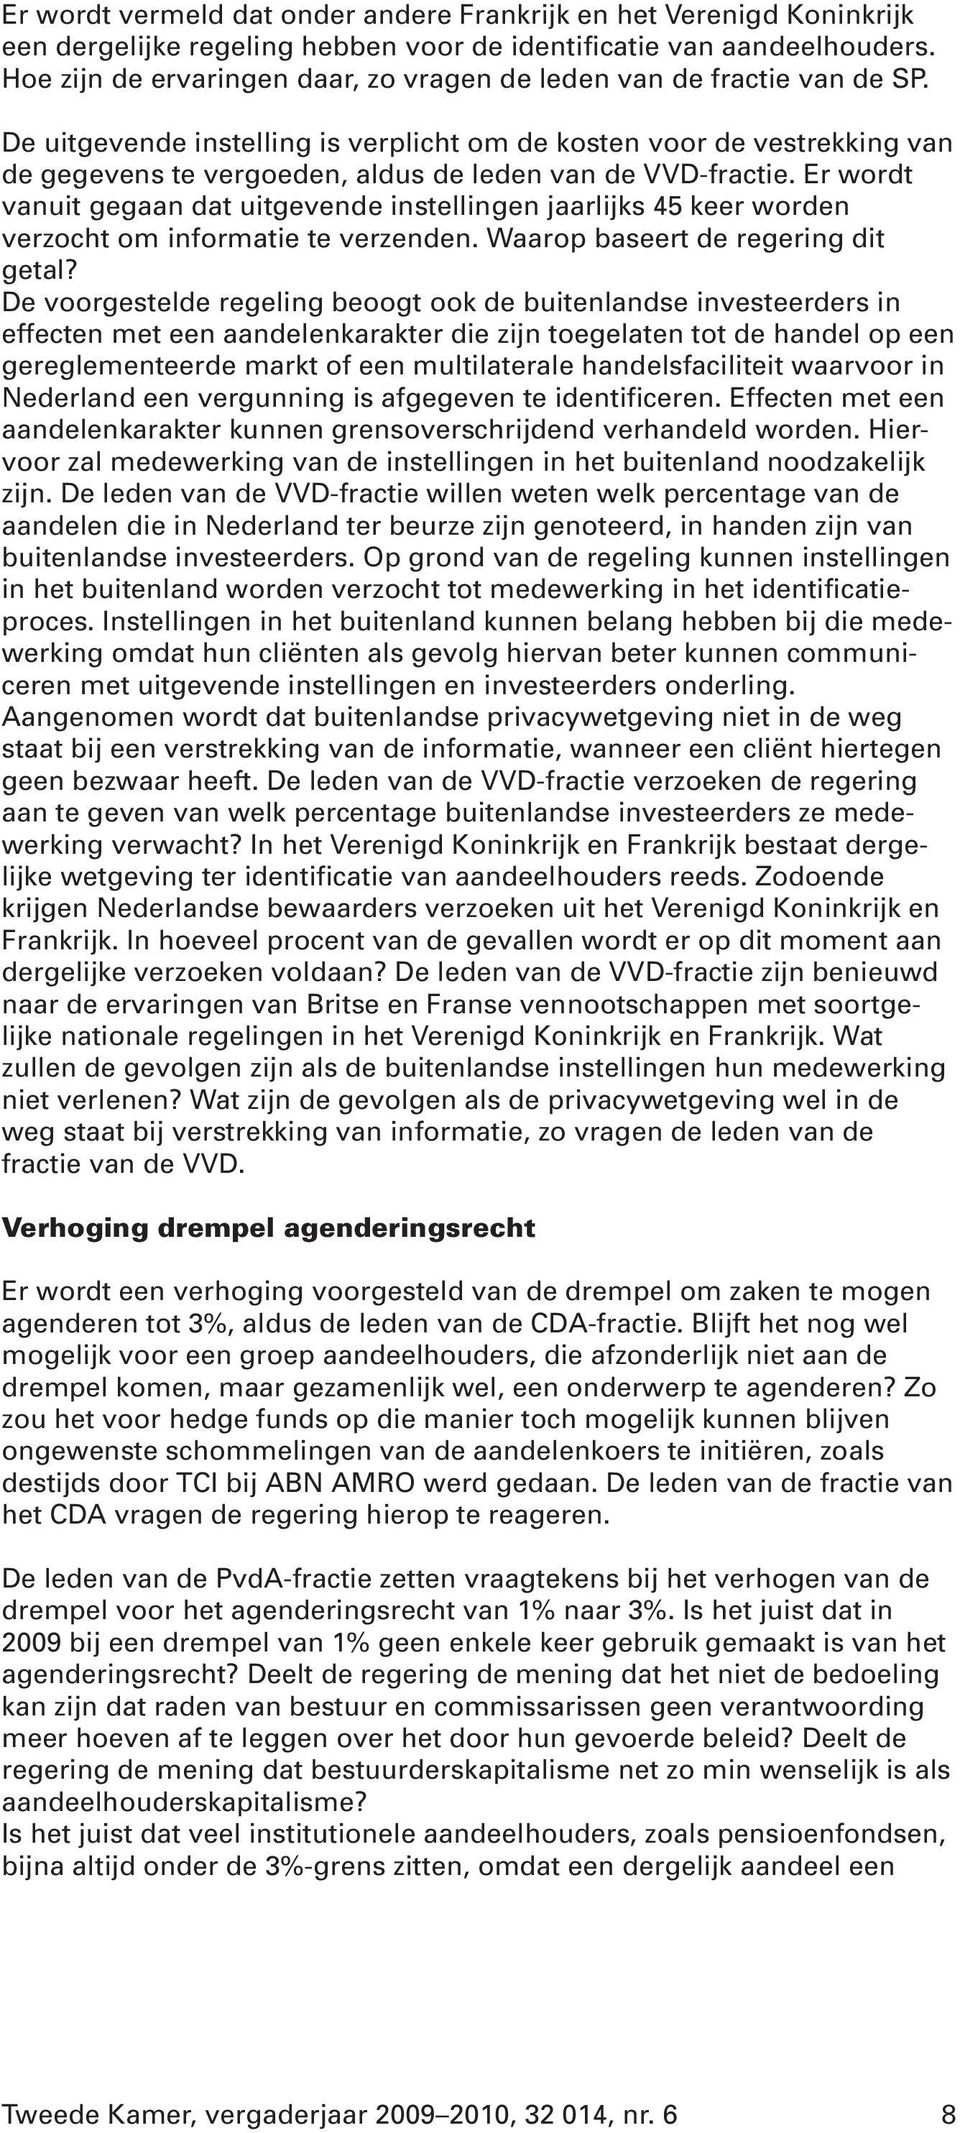 De uitgevende instelling is verplicht om de kosten voor de vestrekking van de gegevens te vergoeden, aldus de leden van de VVD-fractie.